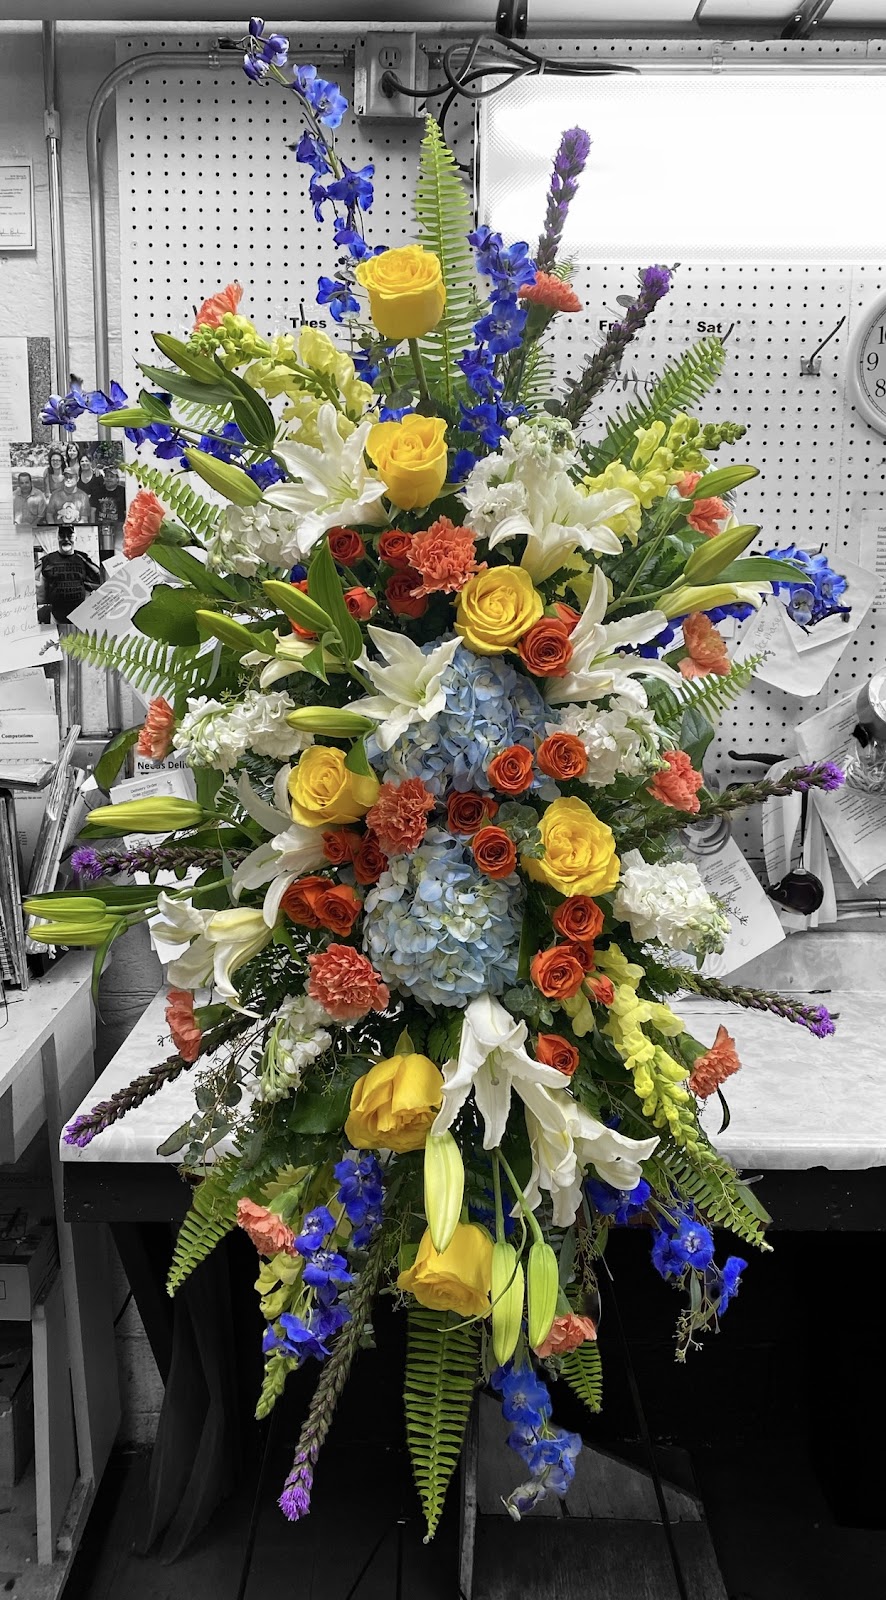 The Bay Window Flower & Gift Shop | 8331 Windham St, Garrettsville, OH 44231, USA | Phone: (330) 527-5666